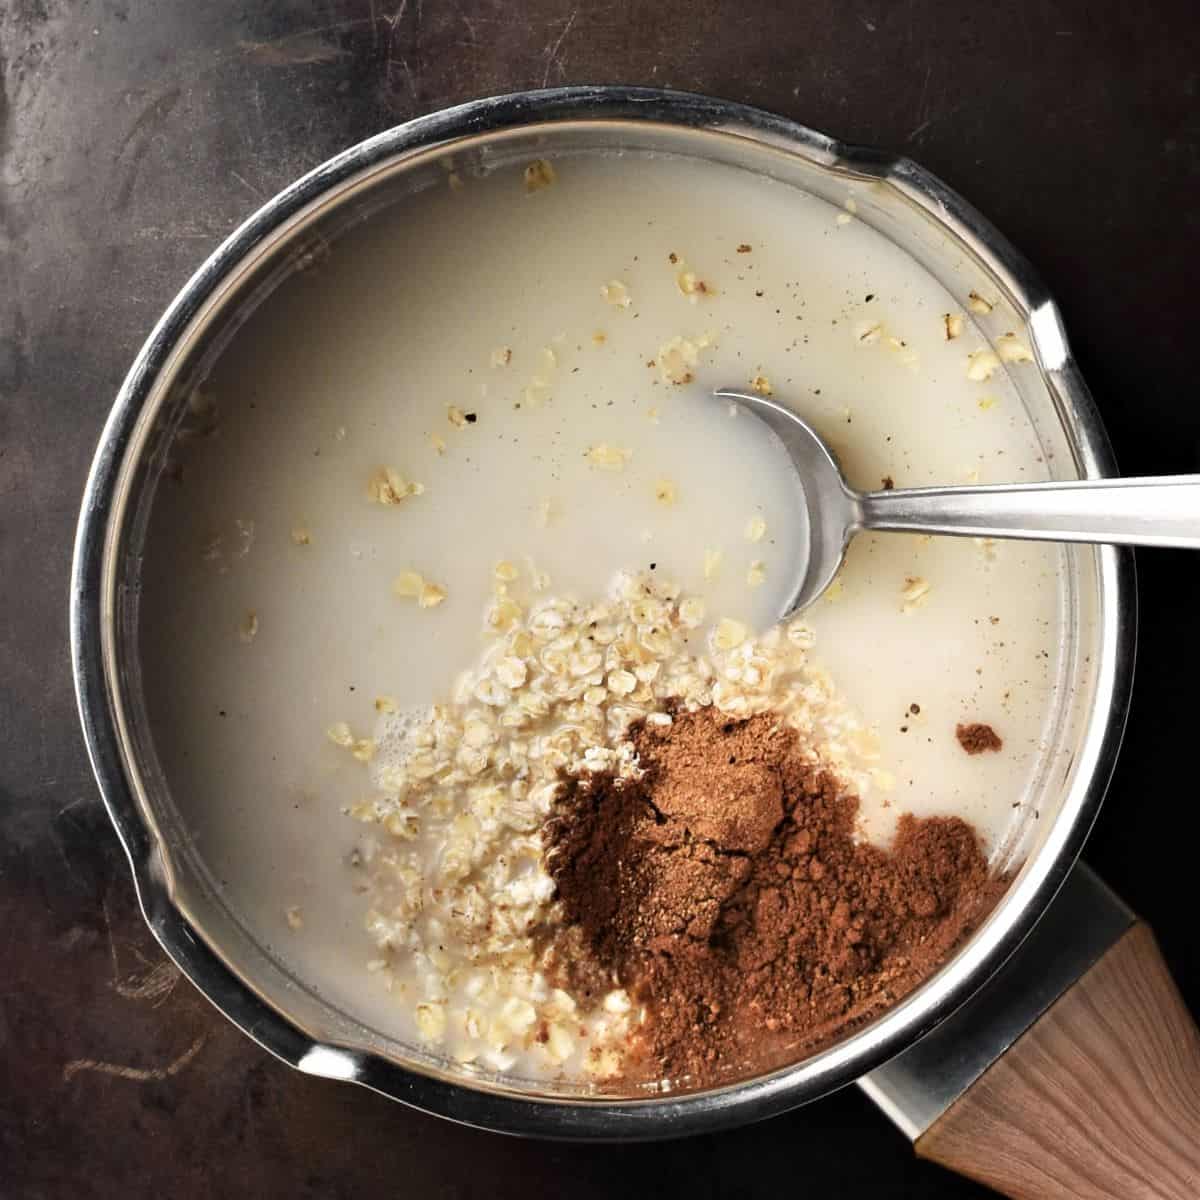 Combining chai porridge ingredients in saucepan with spoon.